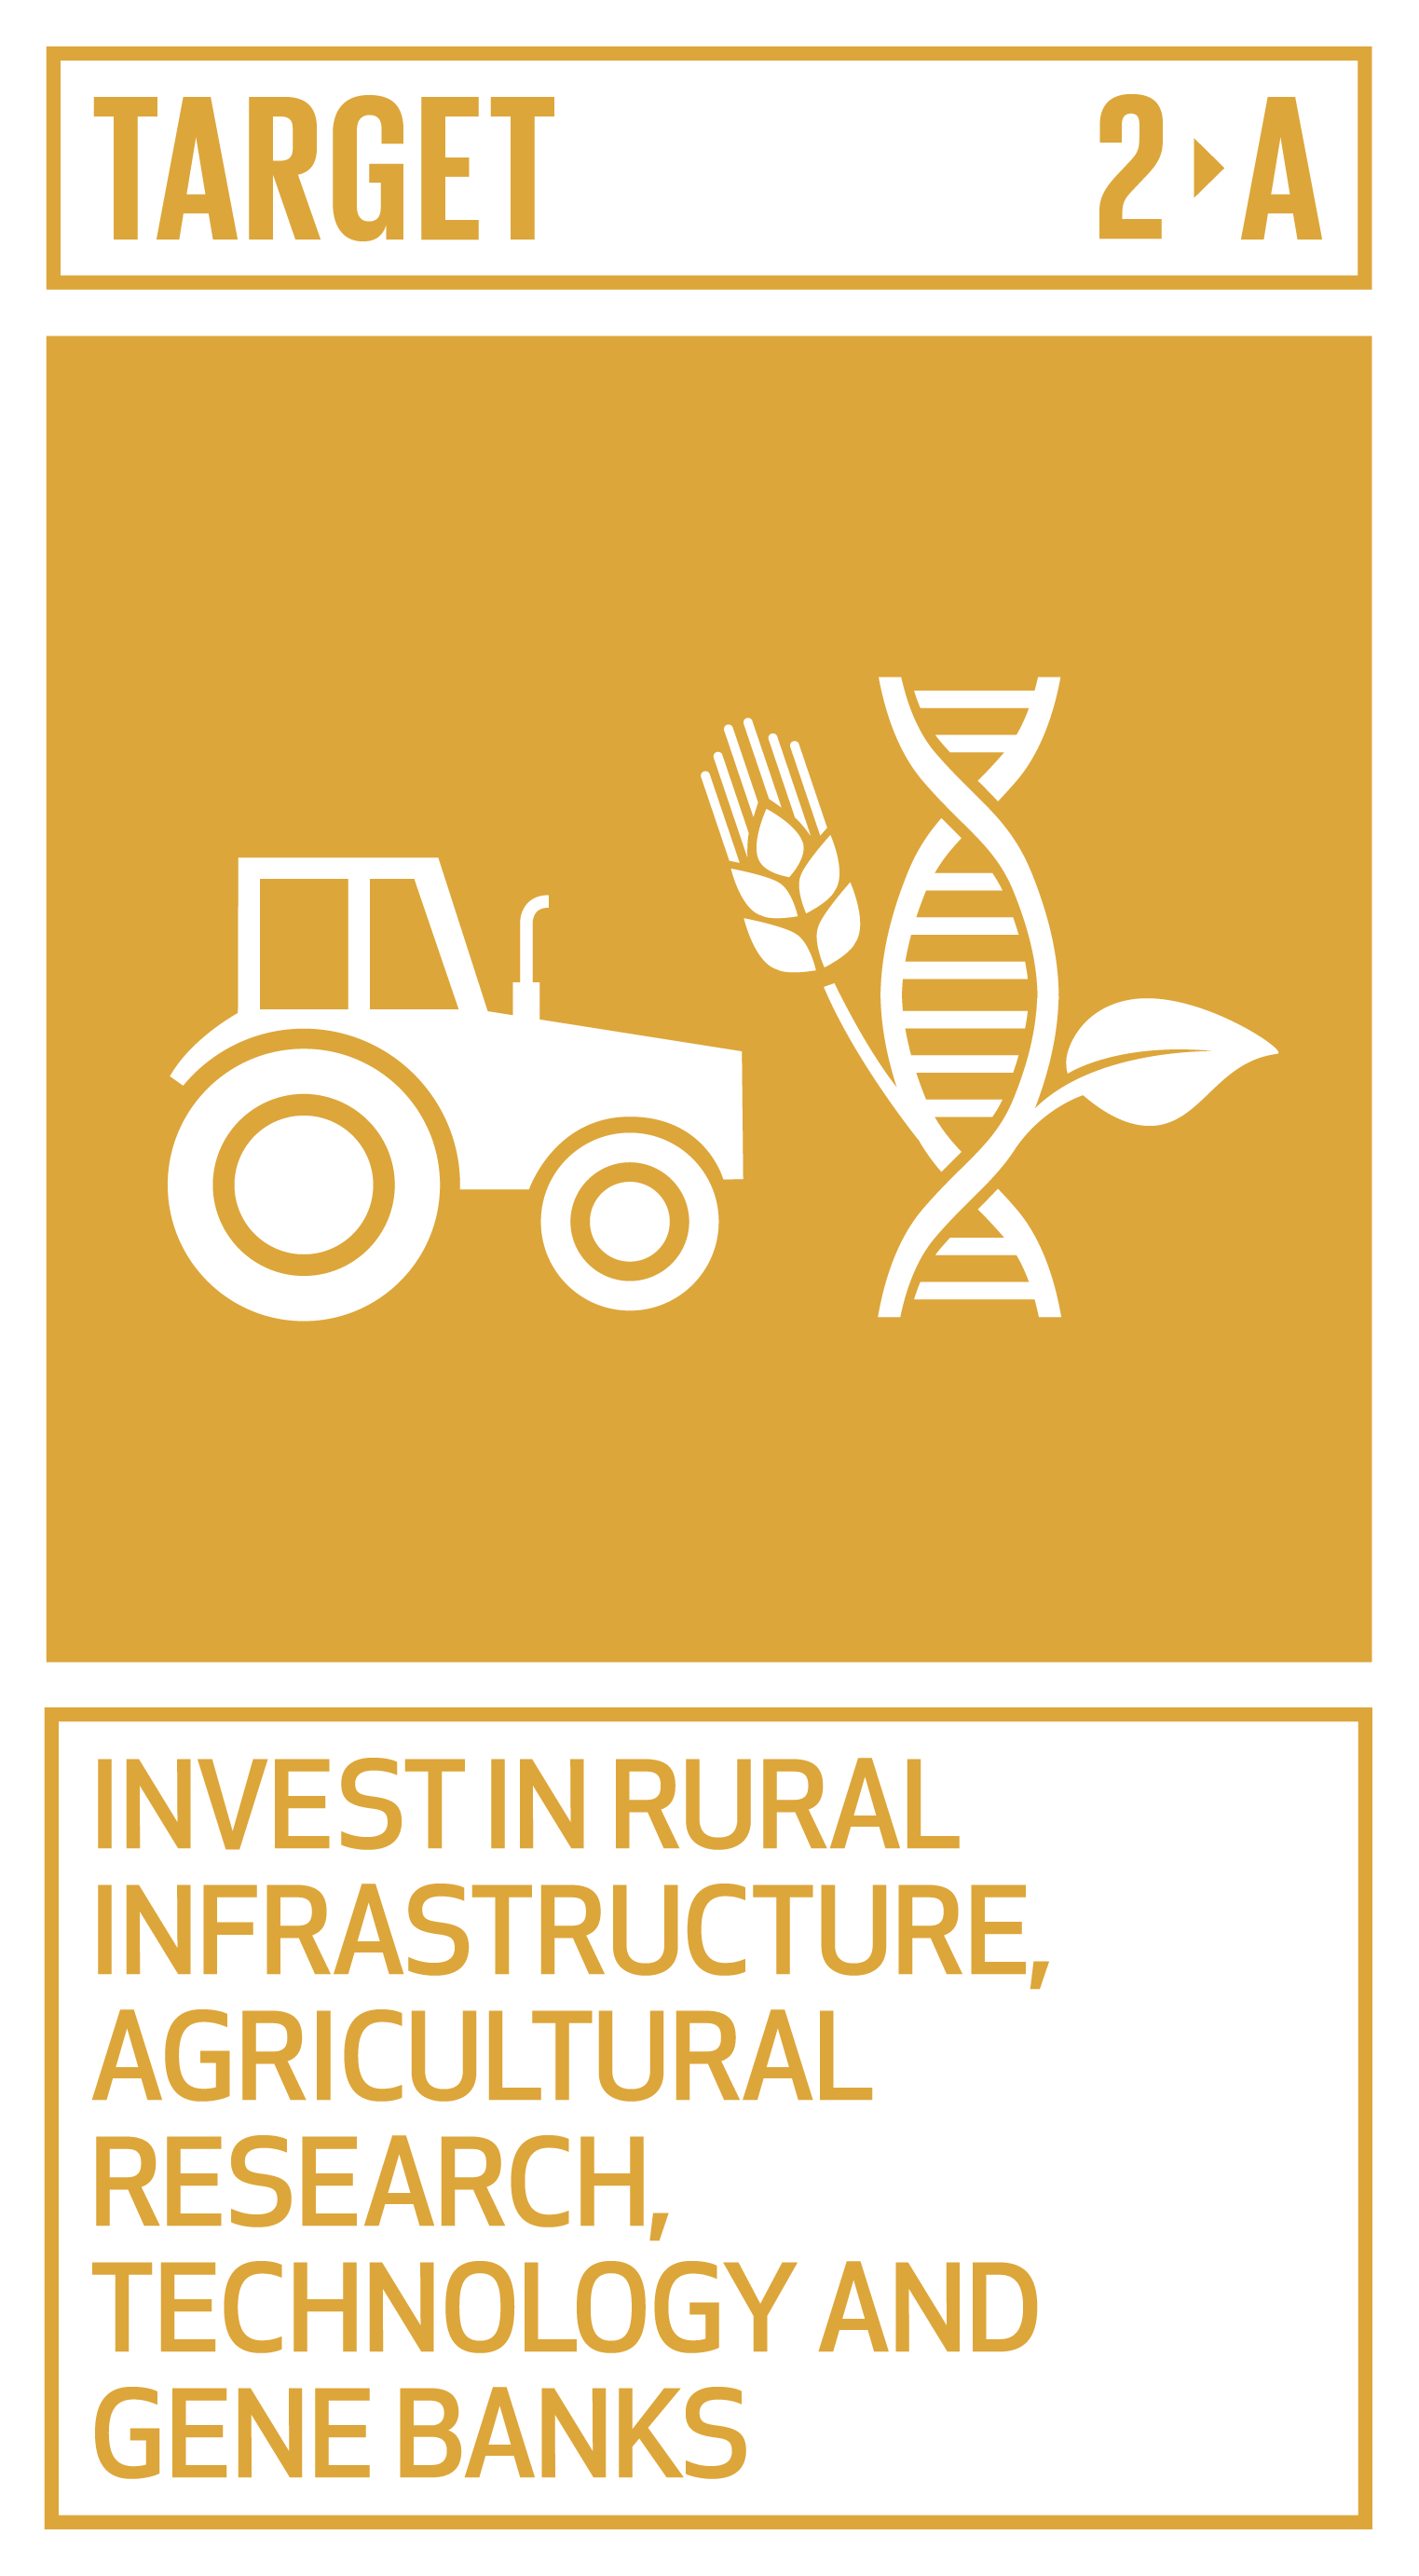 Goal,target,永續發展目標SDGs2目標2.A投資農村基礎設施、農業研究、科技和基因銀行